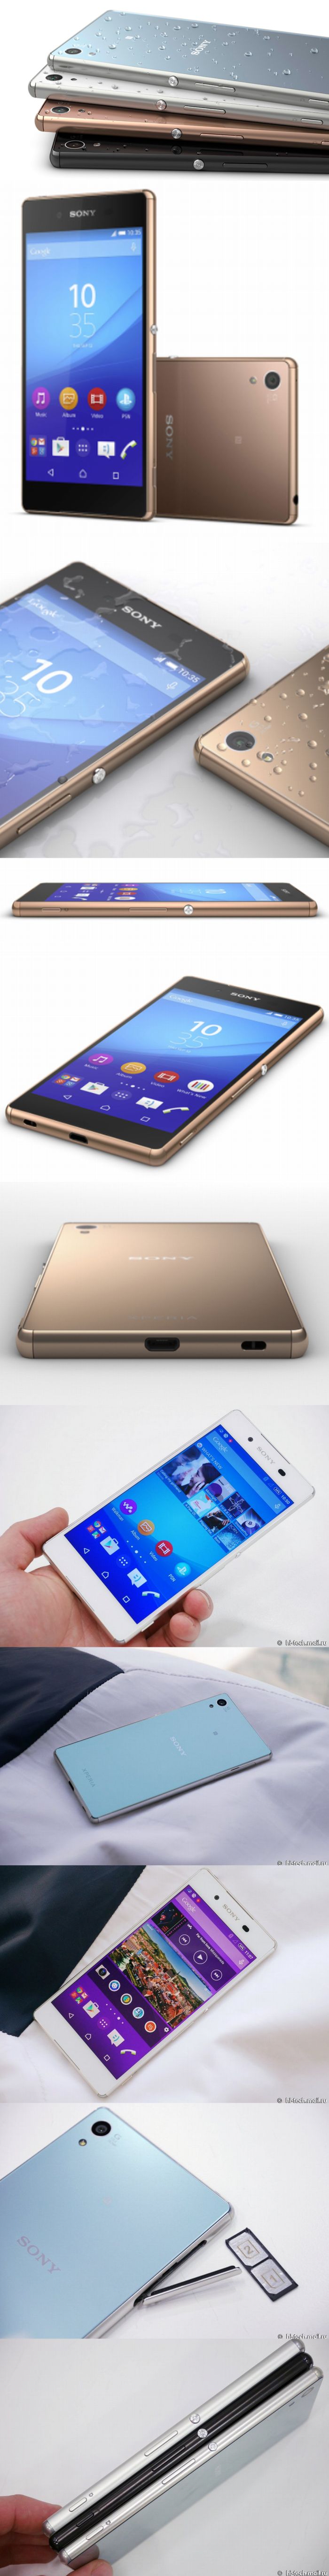 Vékony és vízálló: megjelent a Sony Xperia Z3 Plus